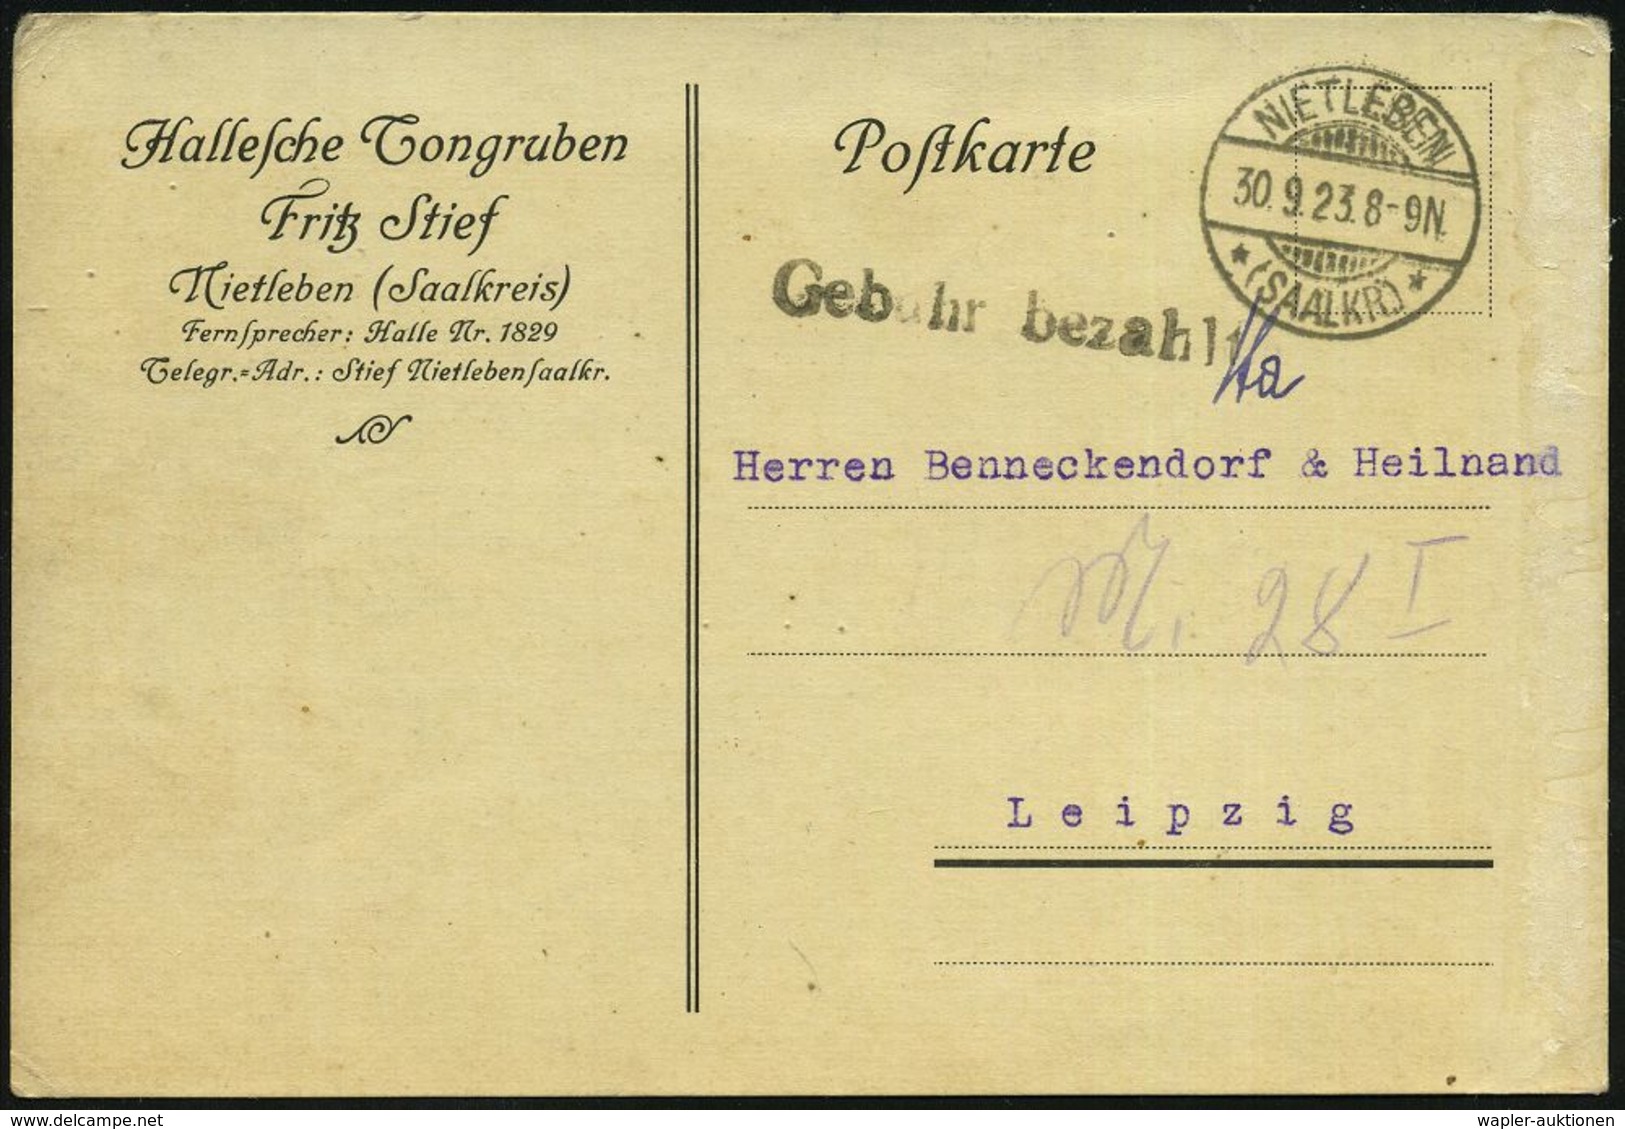 TON / STEINGUT / KACHELOFEN : NIETLEBEN/ *(SAALKR.)* 1923 (30.9.) 1K-Gitter + Schw.1L: Gebühr Bezahlt A.Vordr-Kt: Halles - Porzellan